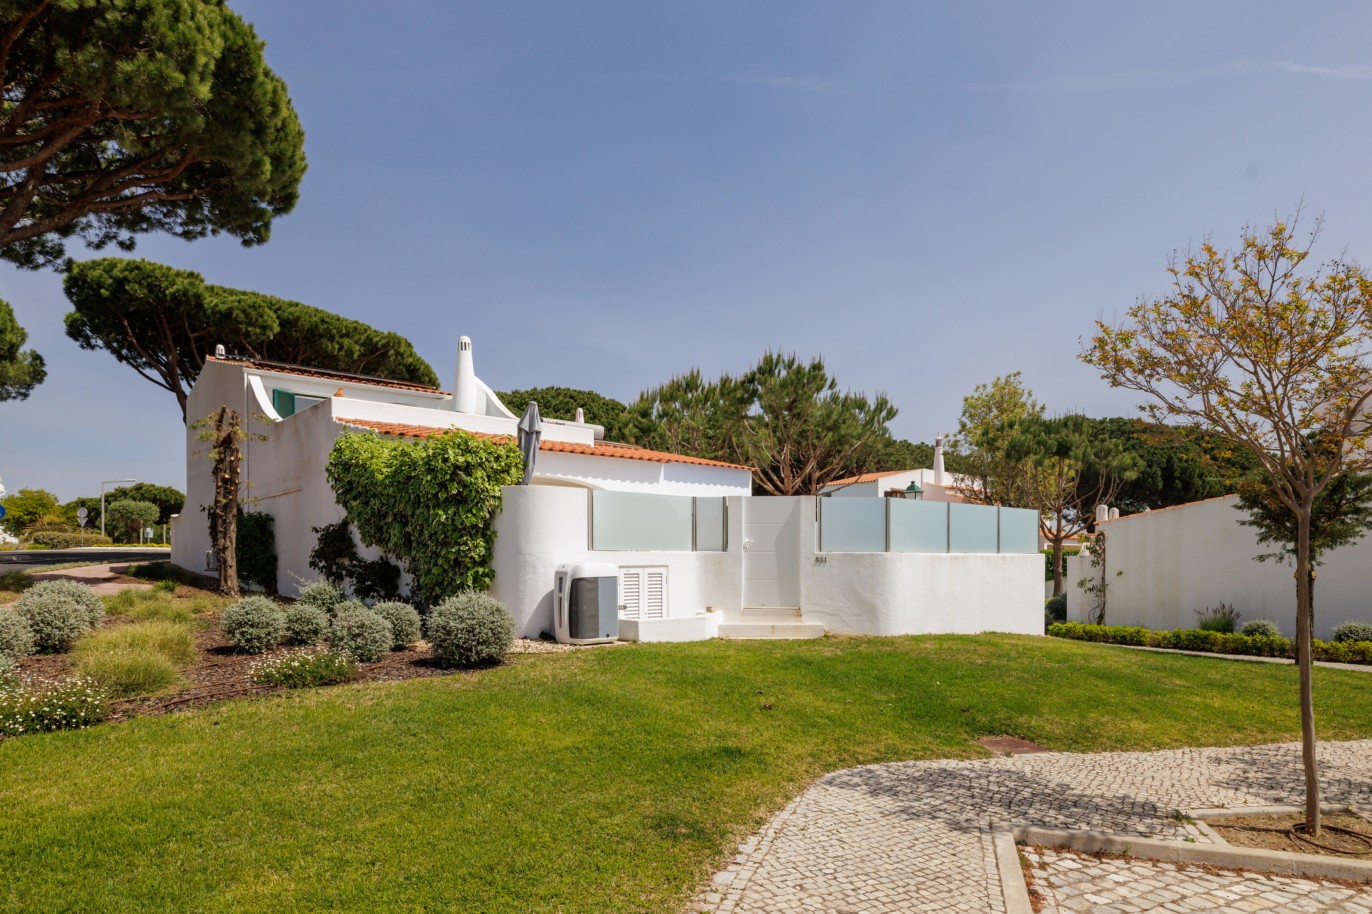 Moradia renovada de três quartos, para venda em Vale do Lobo, Algarve _222265